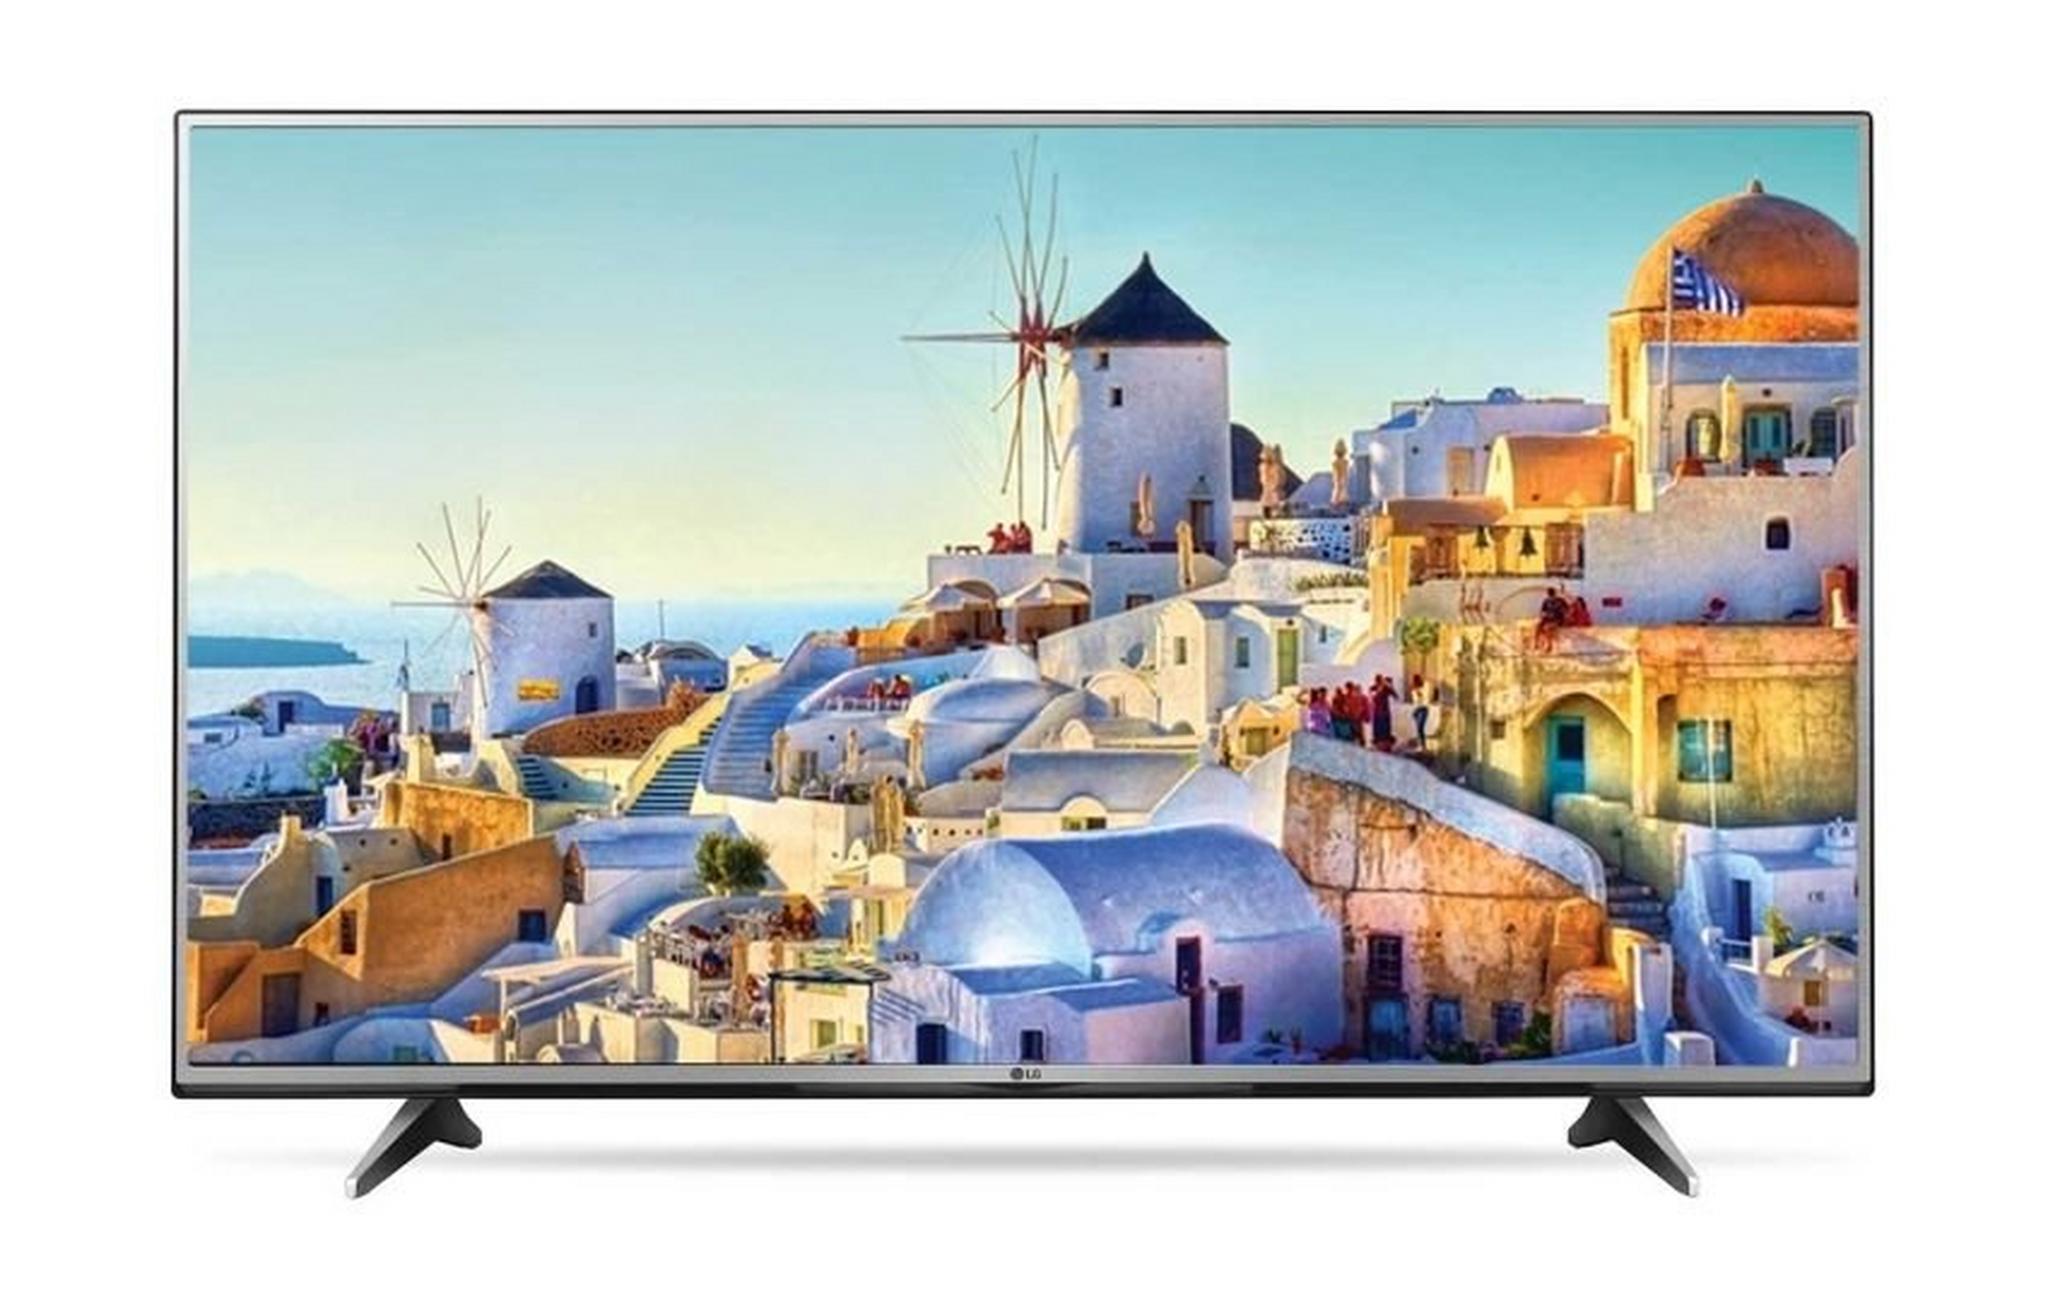 LG 55-inch UHD (2160p) Smart LED TV – 55UH617V